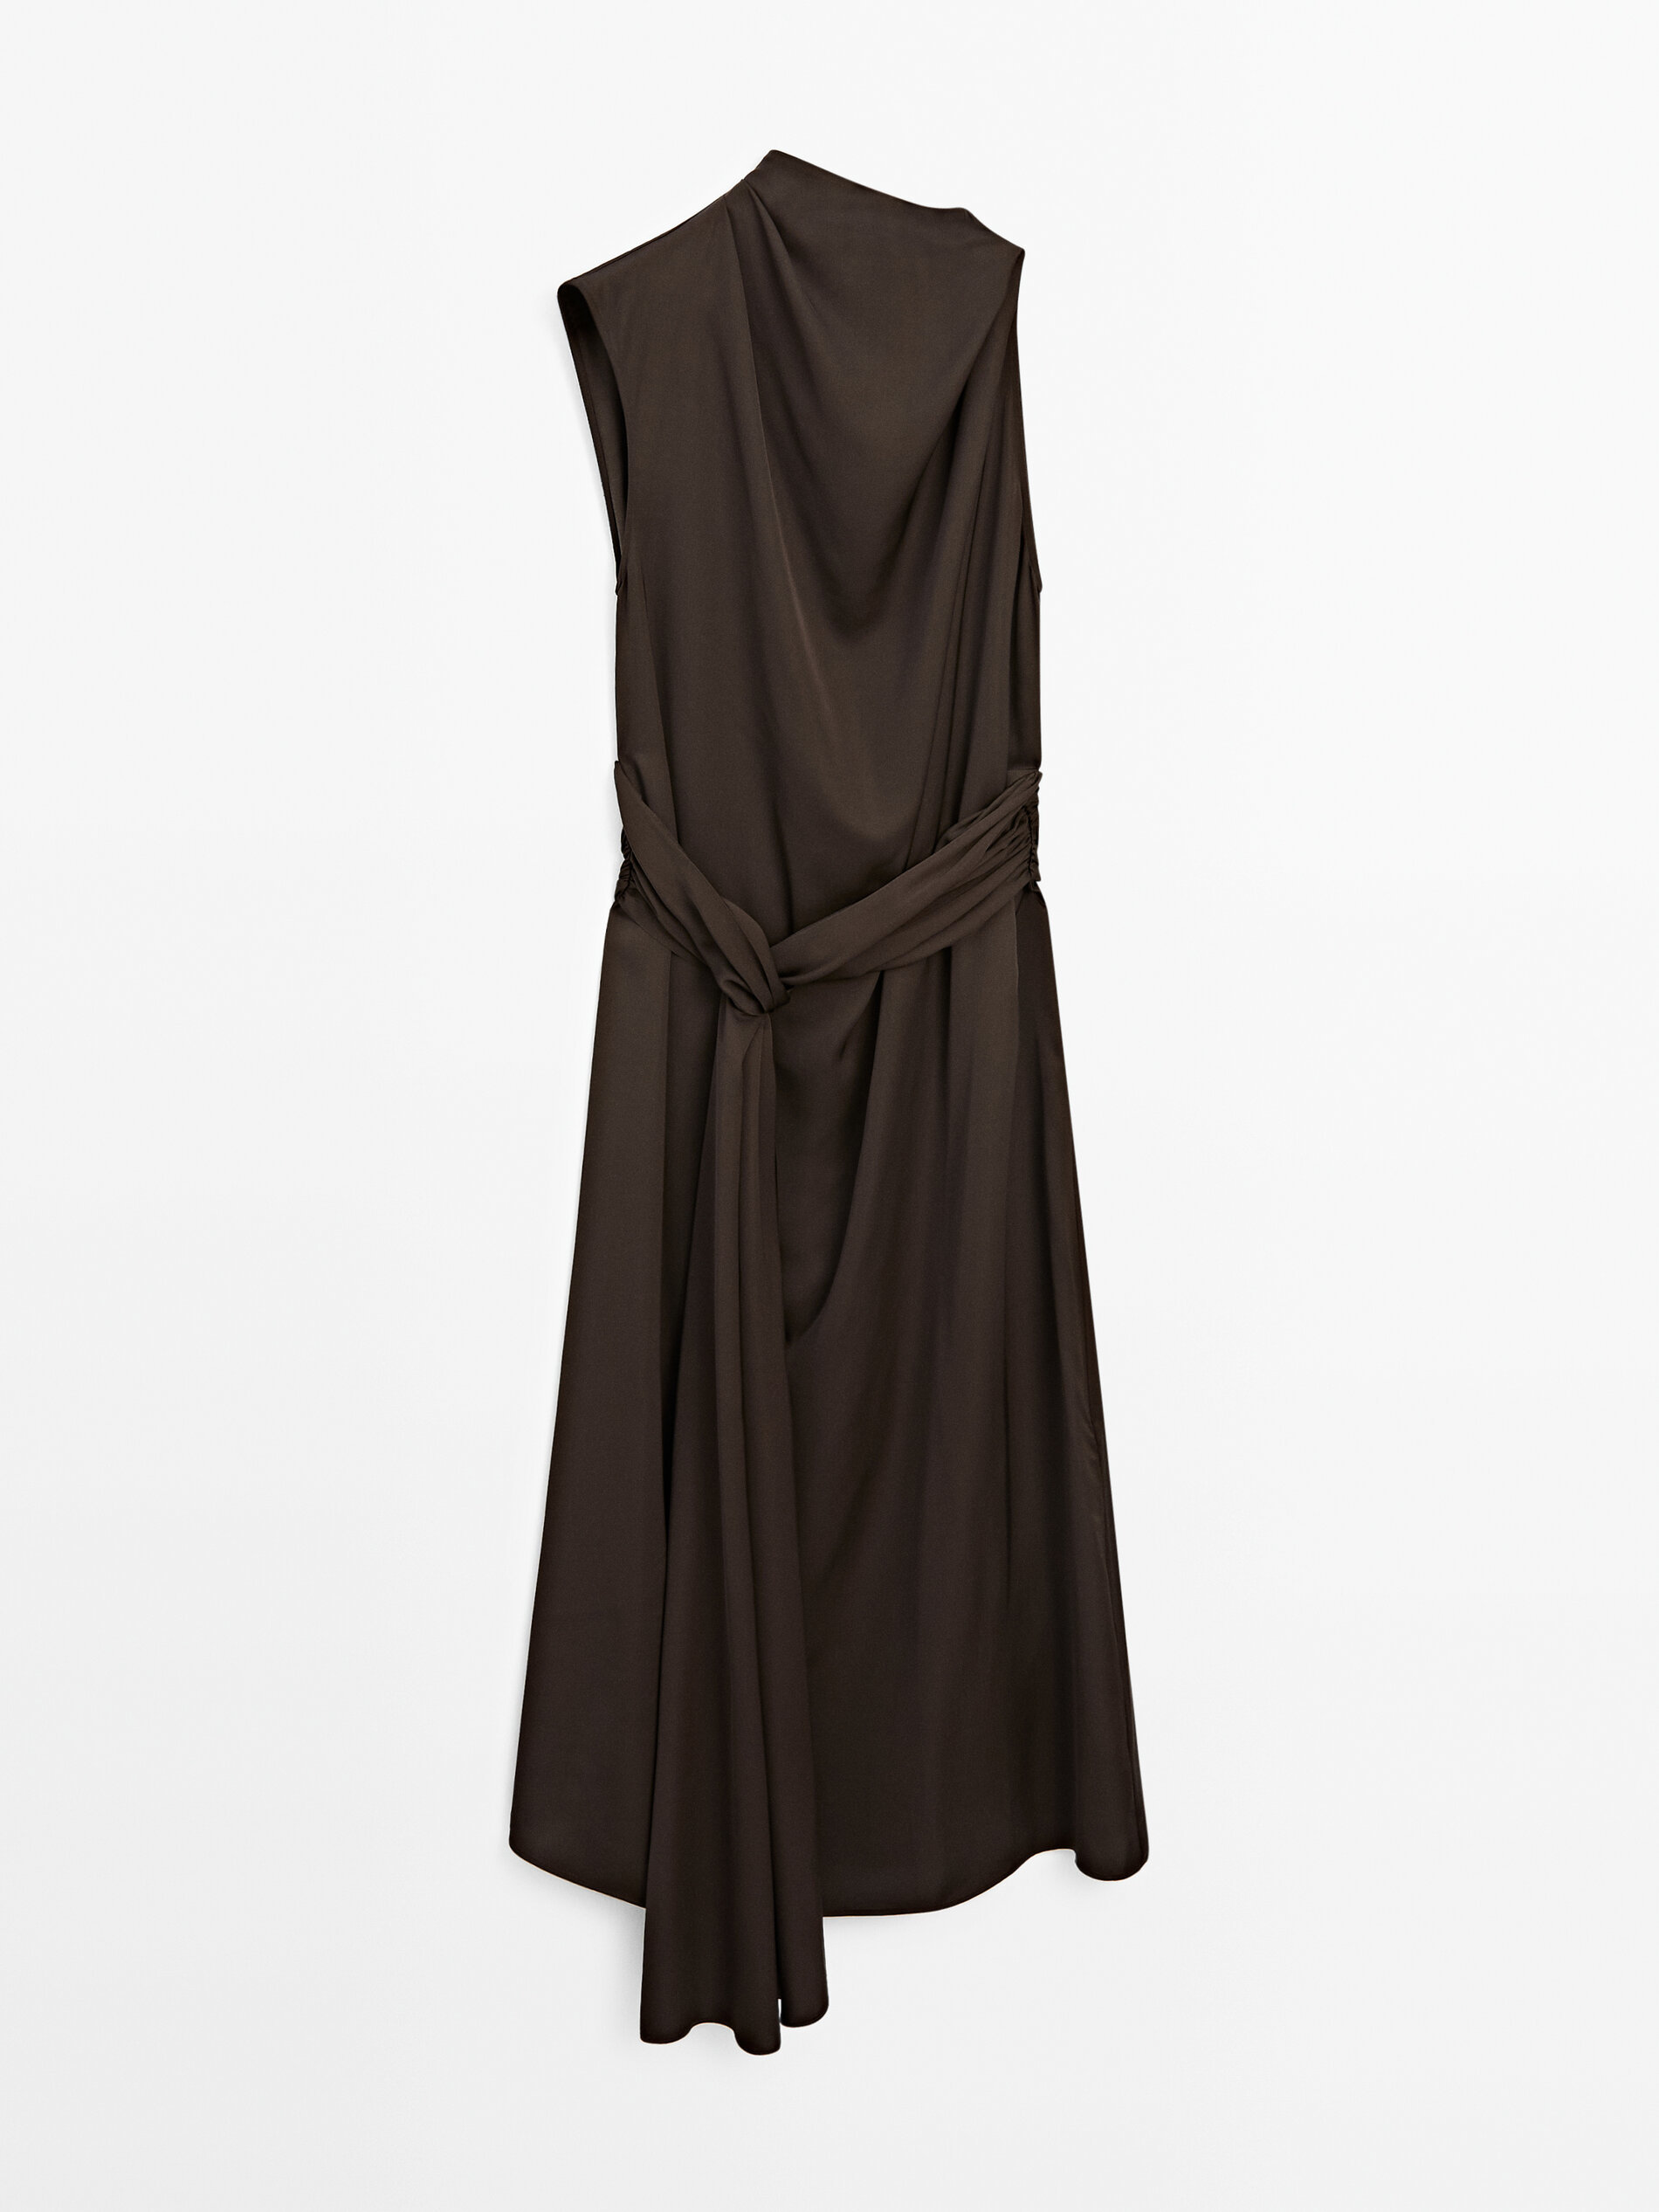 Renueva tu armario con el vestido largo asimtrico satinado de Massimo Dutti que te har sentir fabulosa a los 60 aos